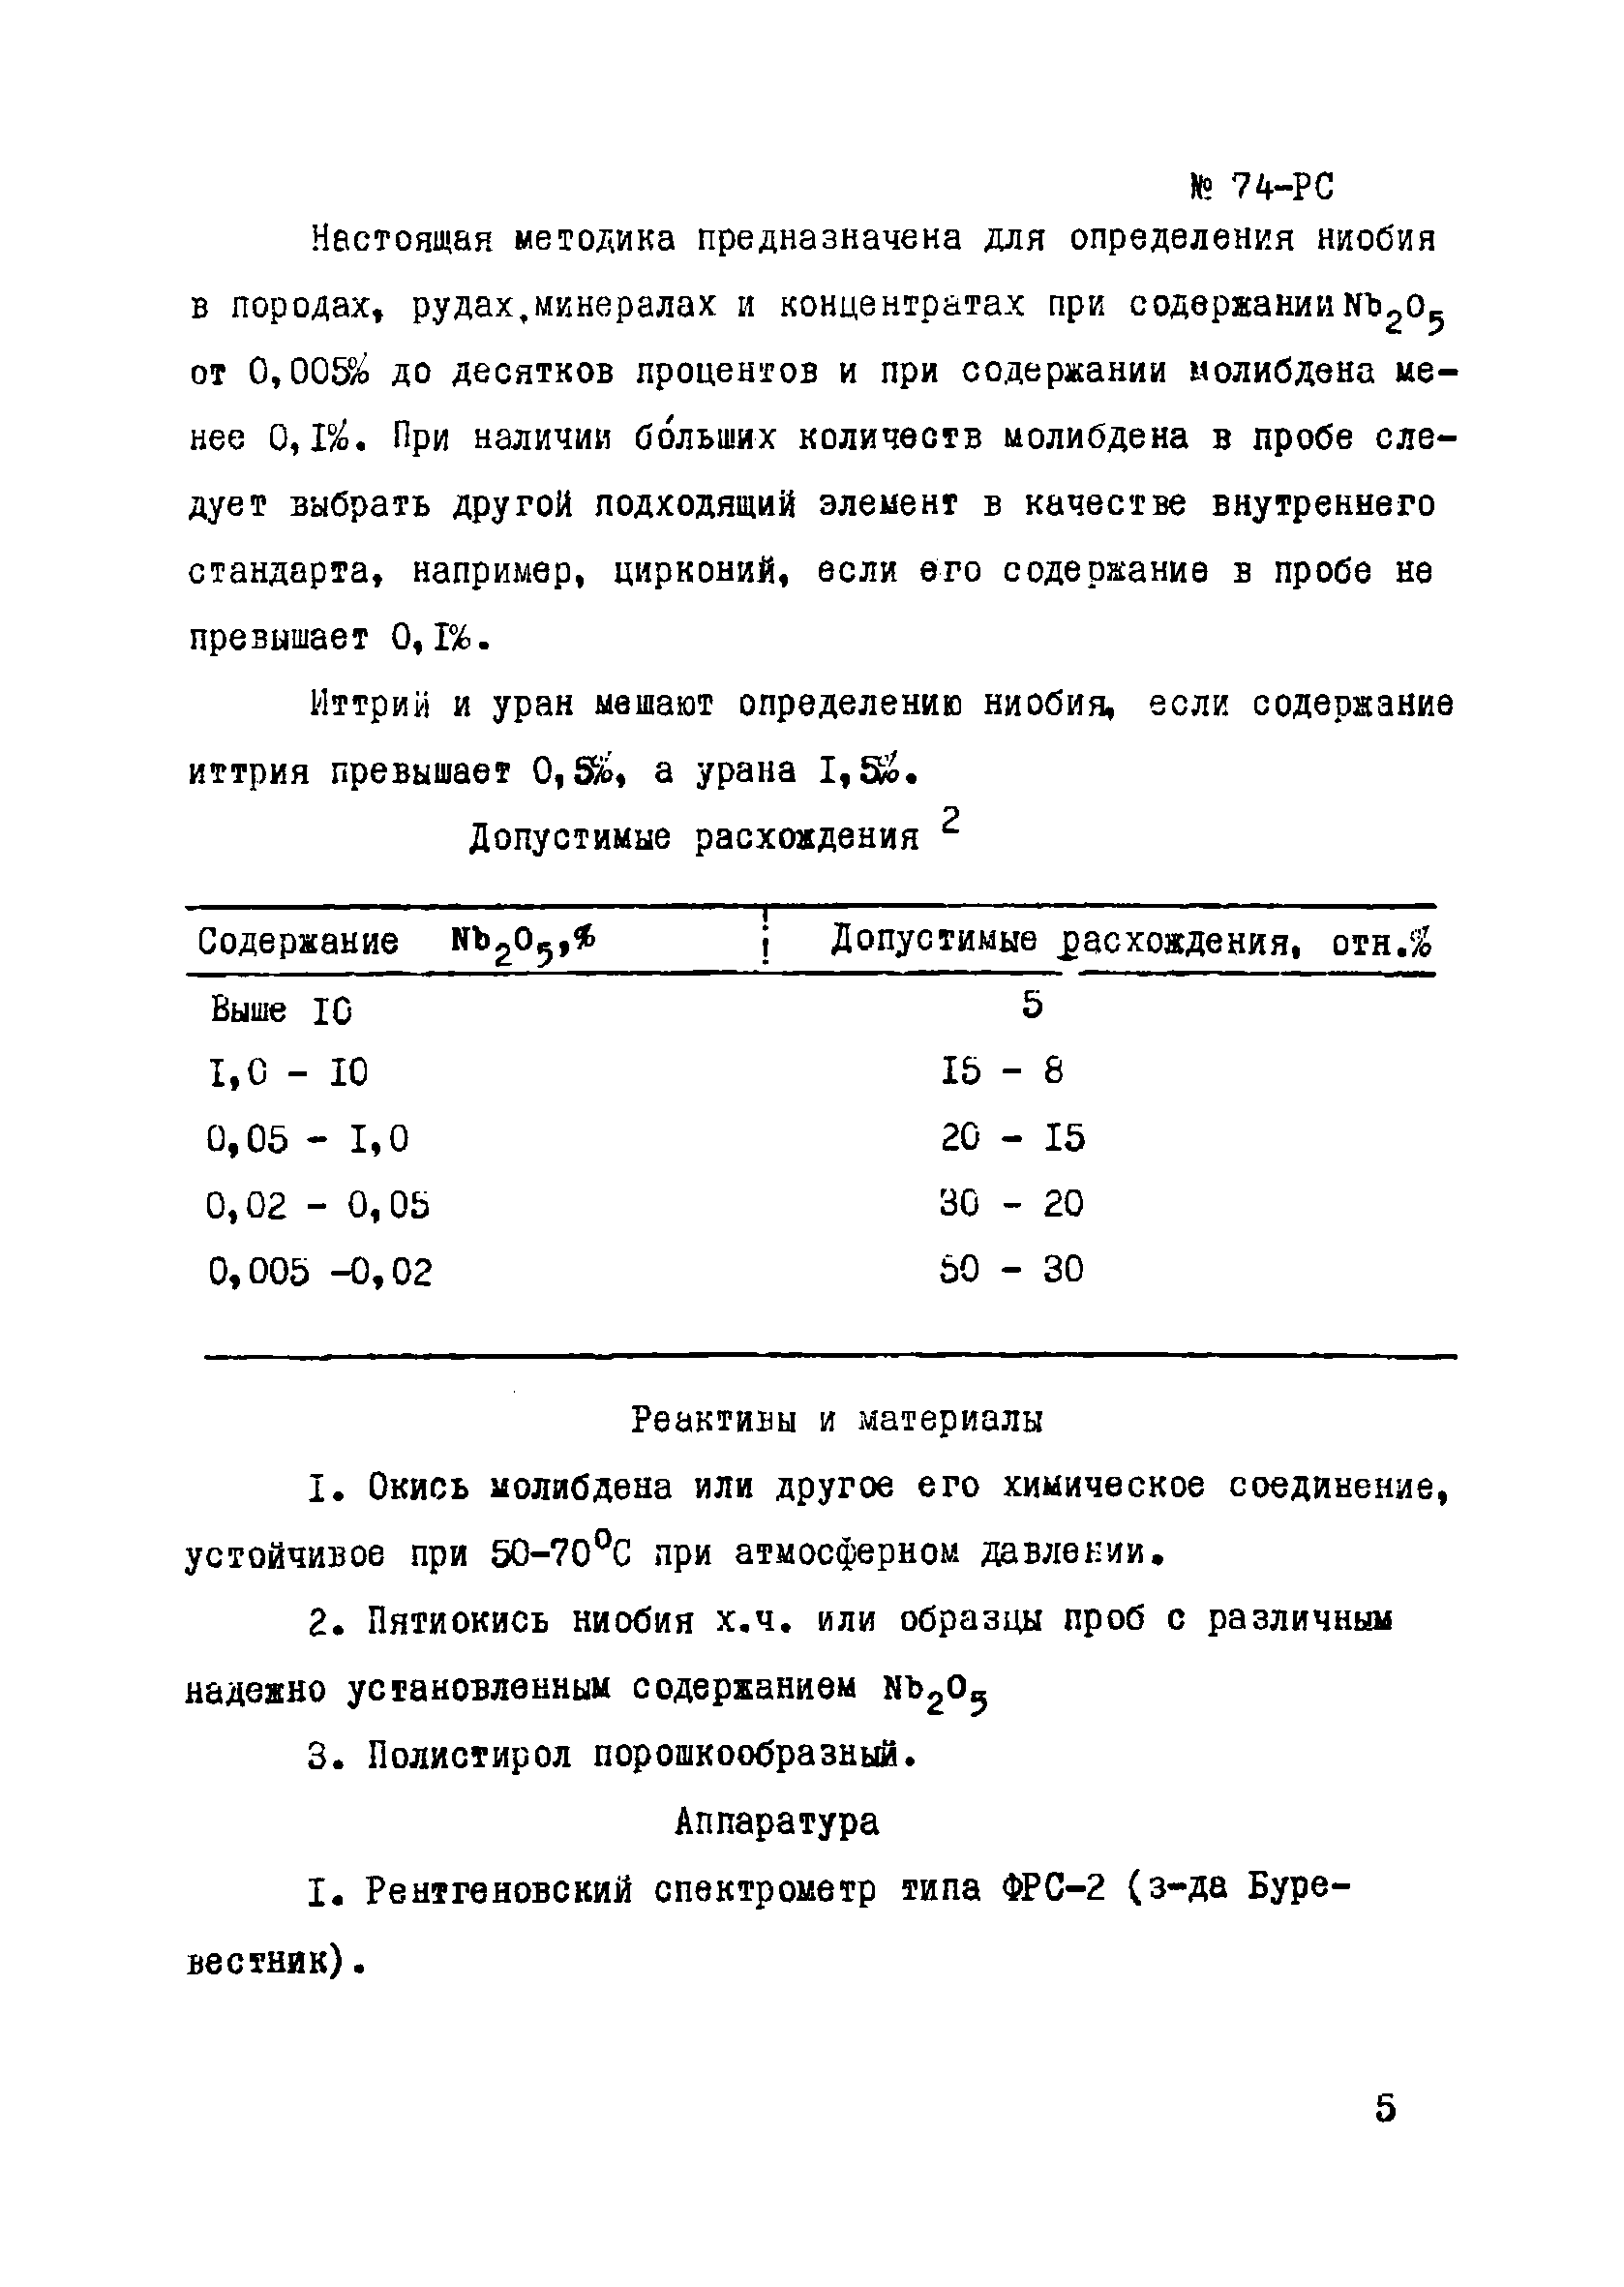 Инструкция НСАМ 74-РС